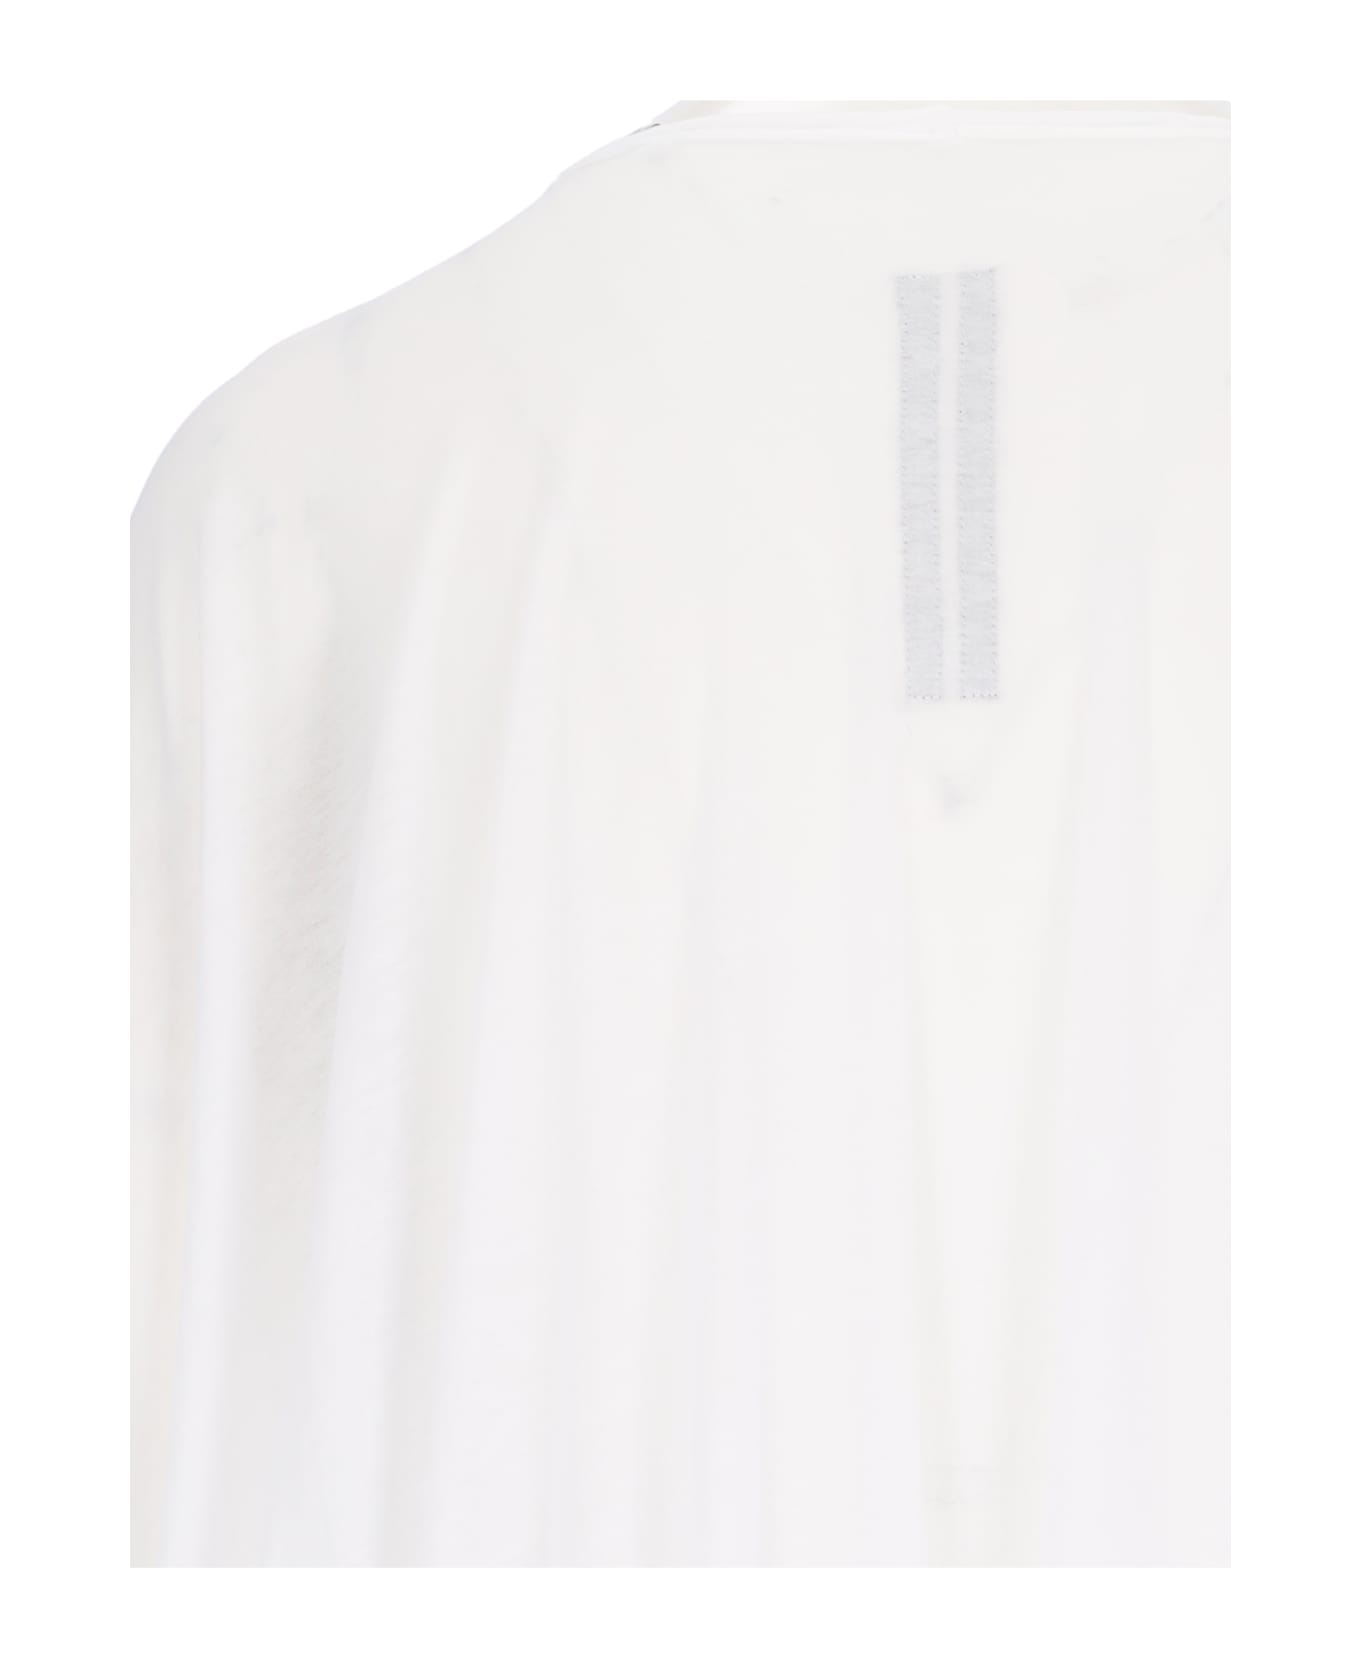 DRKSHDW Dress - White